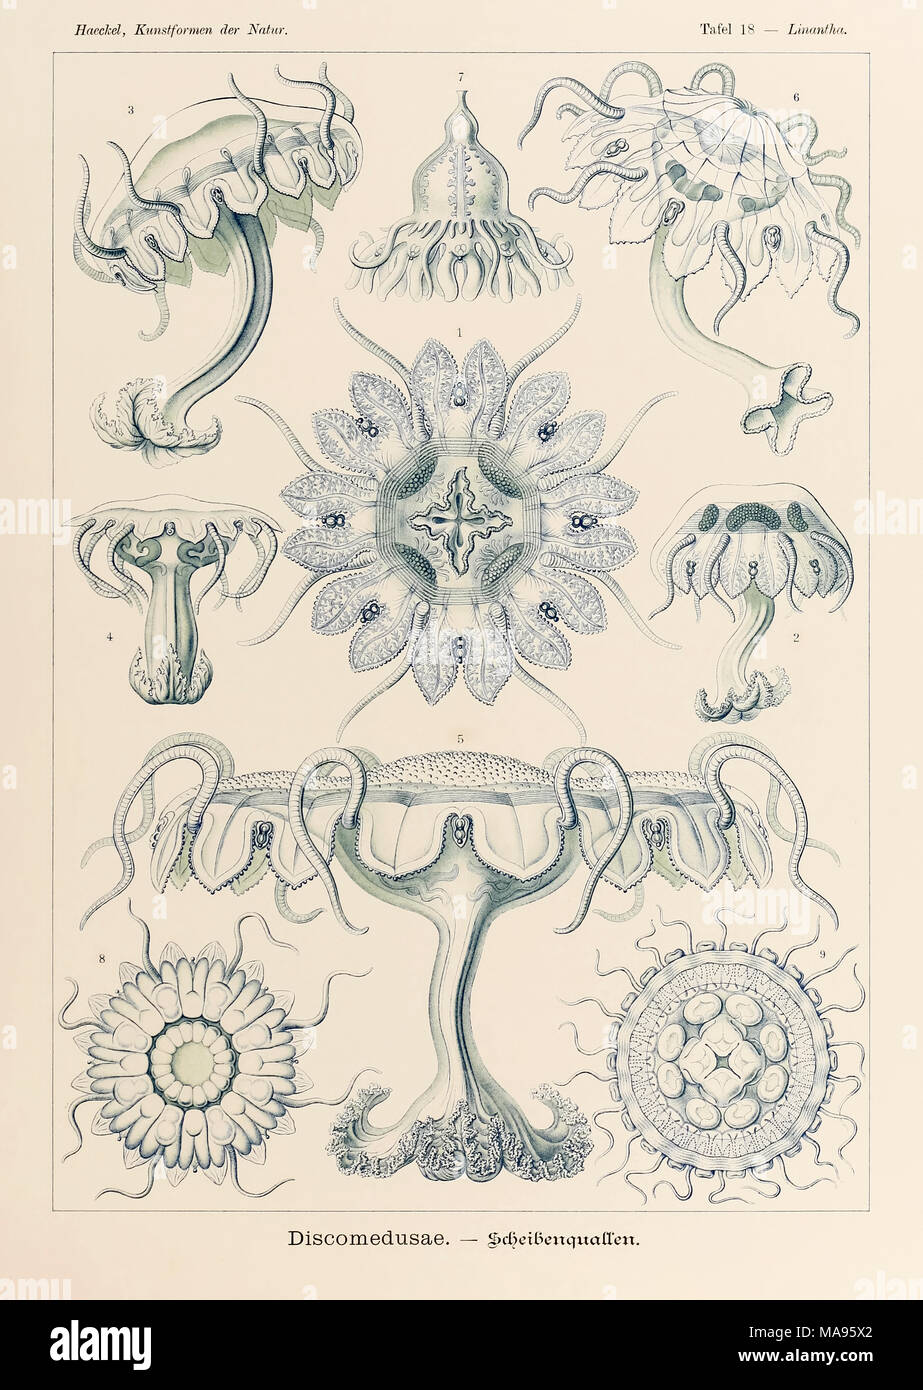 18 Linantha Discomedusae placa de "Kunstformen der Natur" (formas artísticas en la naturaleza), ilustrado por Ernst Haeckel (1834-1919). Ver más información a continuación. Foto de stock